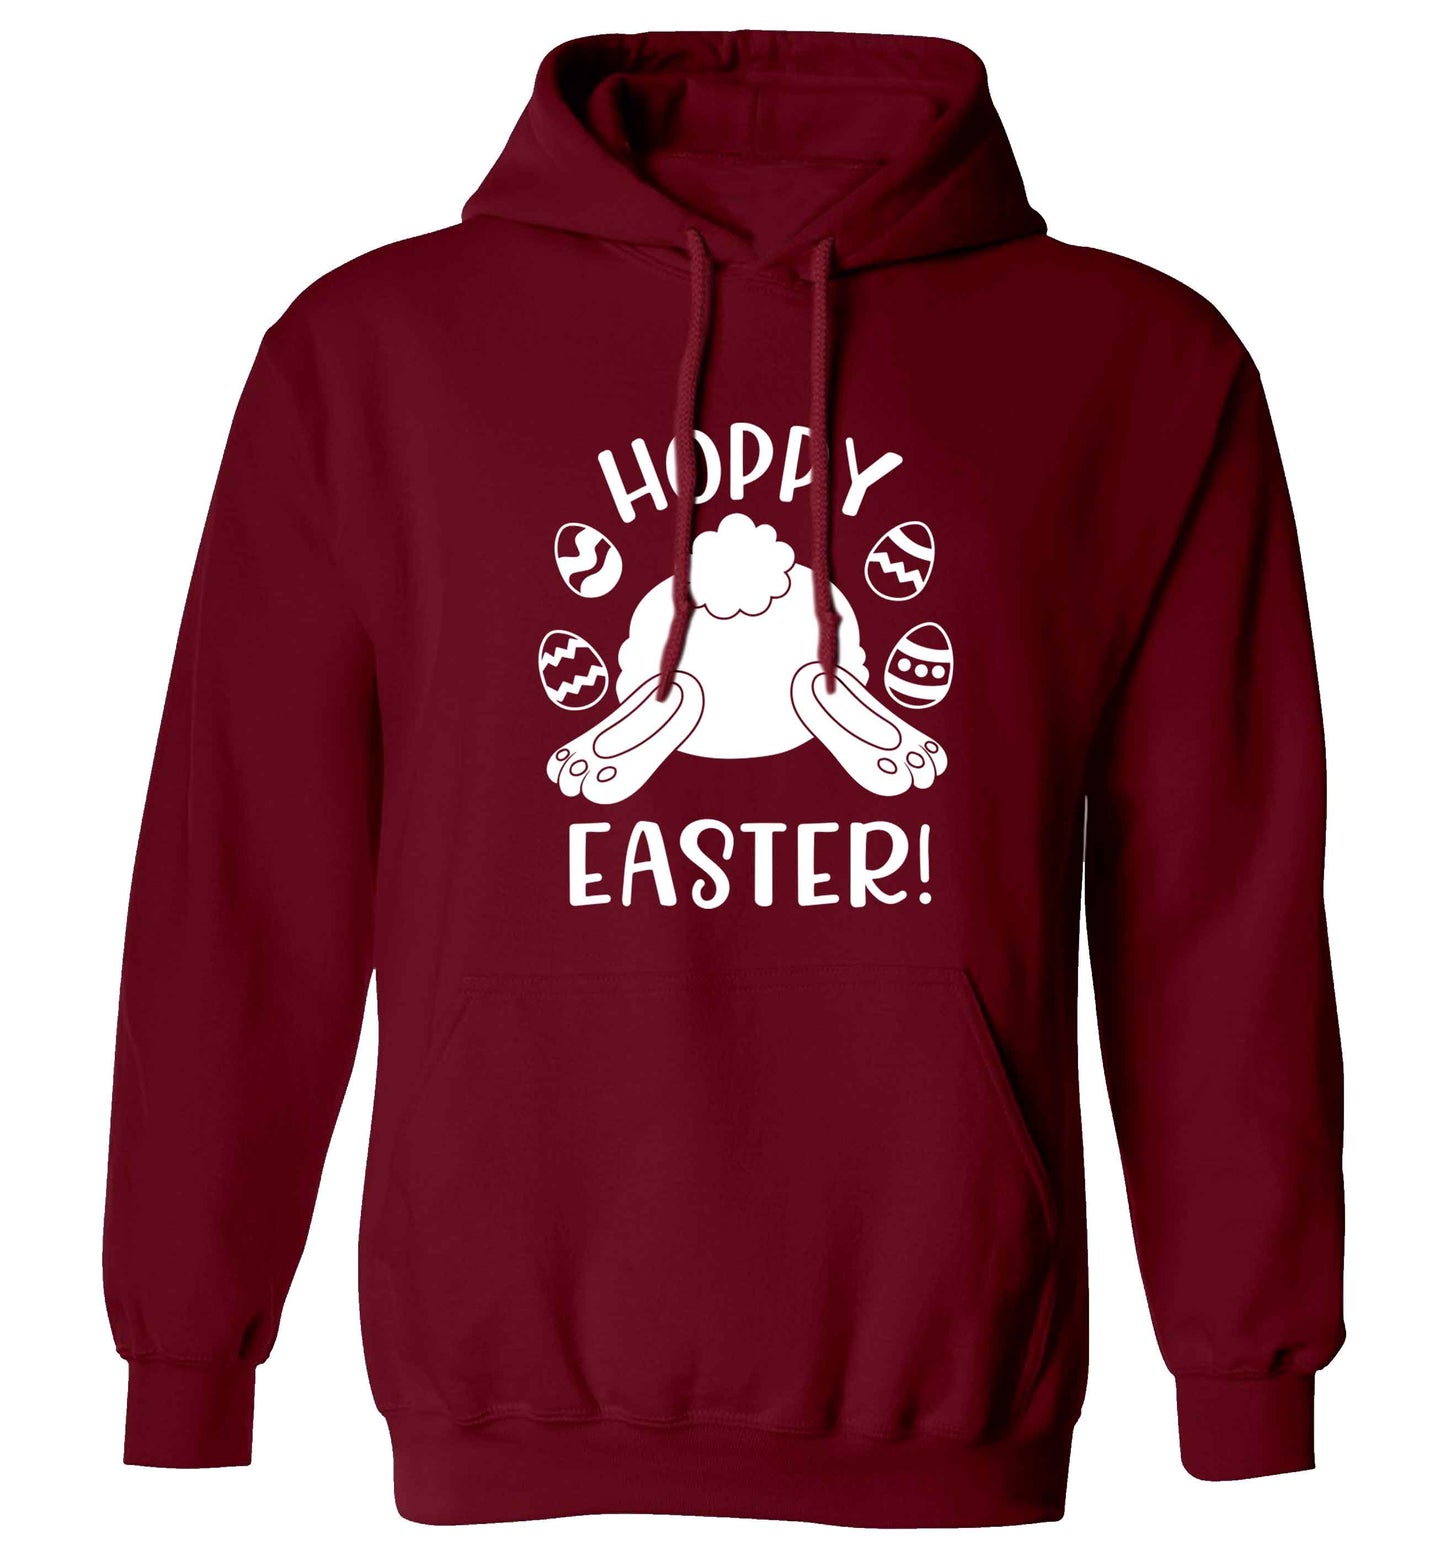 Hoppy Easter adults unisex maroon hoodie 2XL